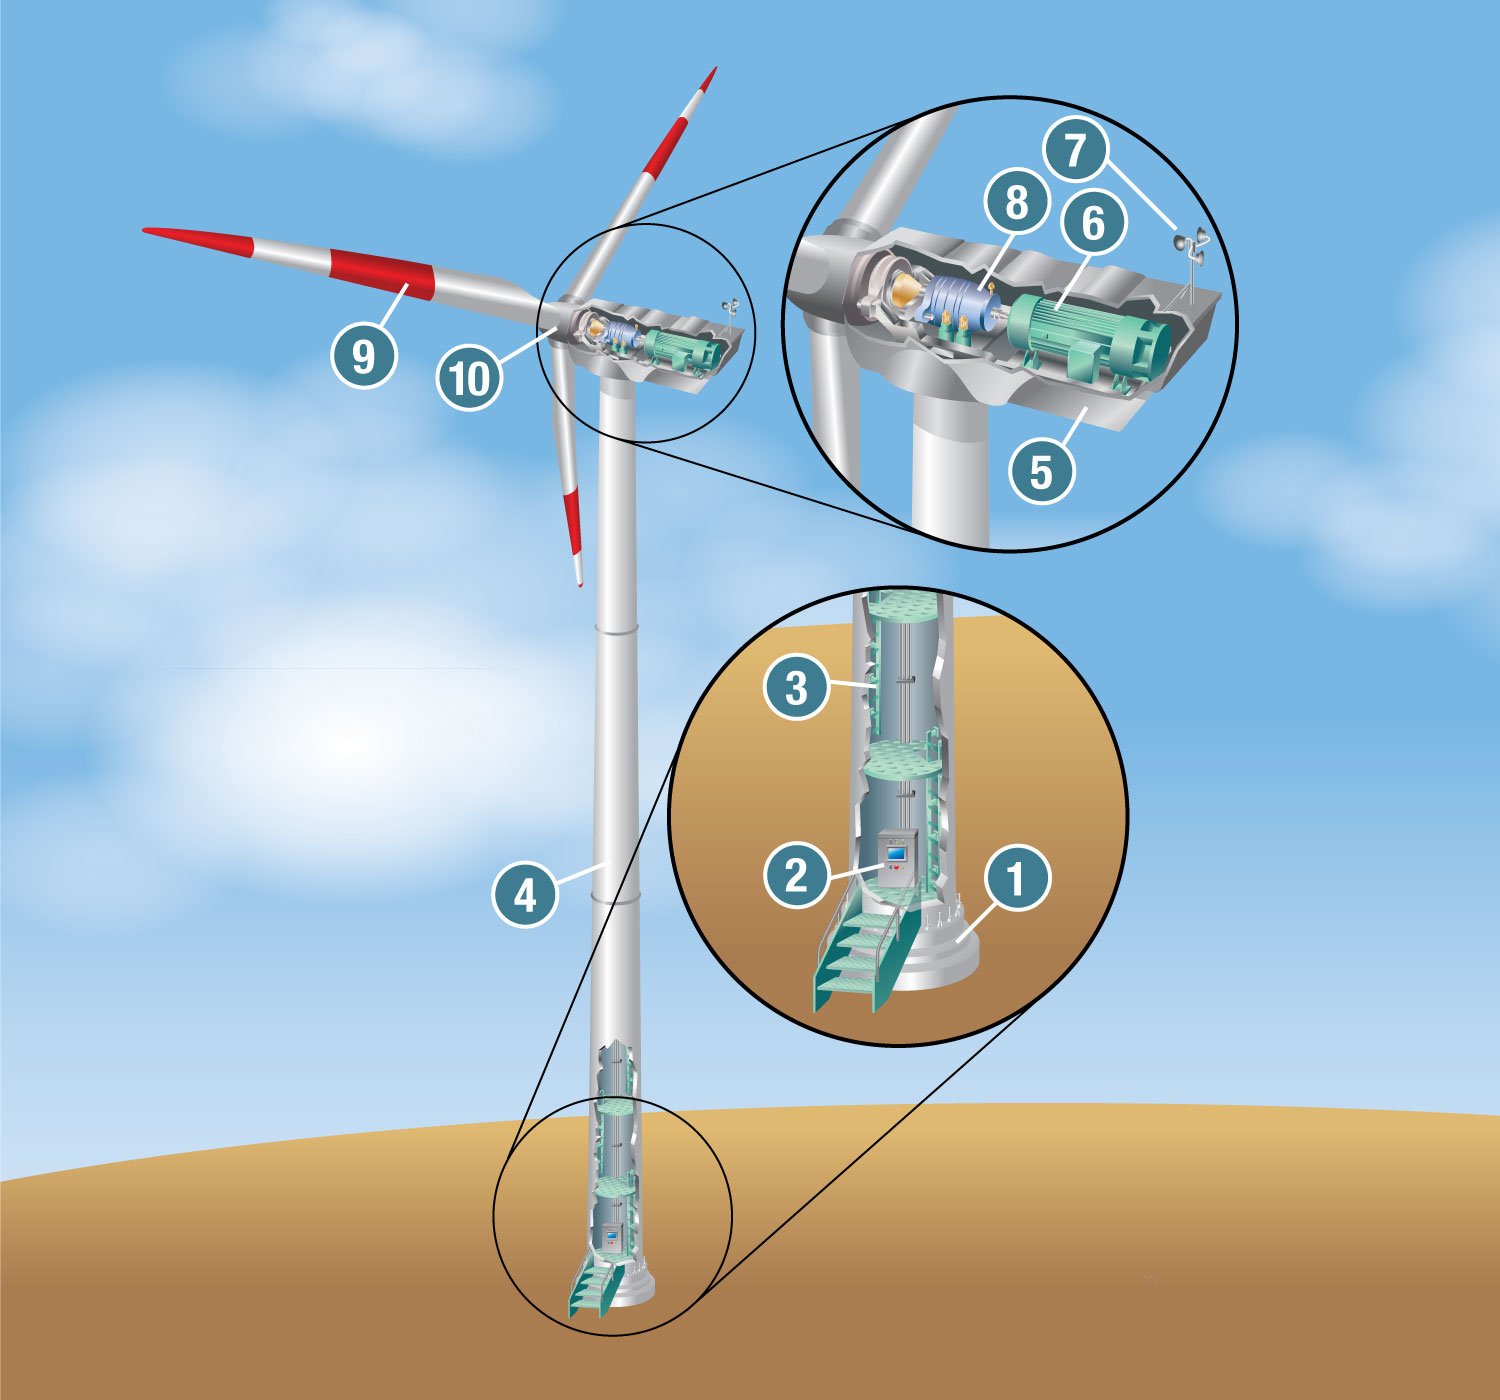 Anatomia de uma torre/turbina eólica